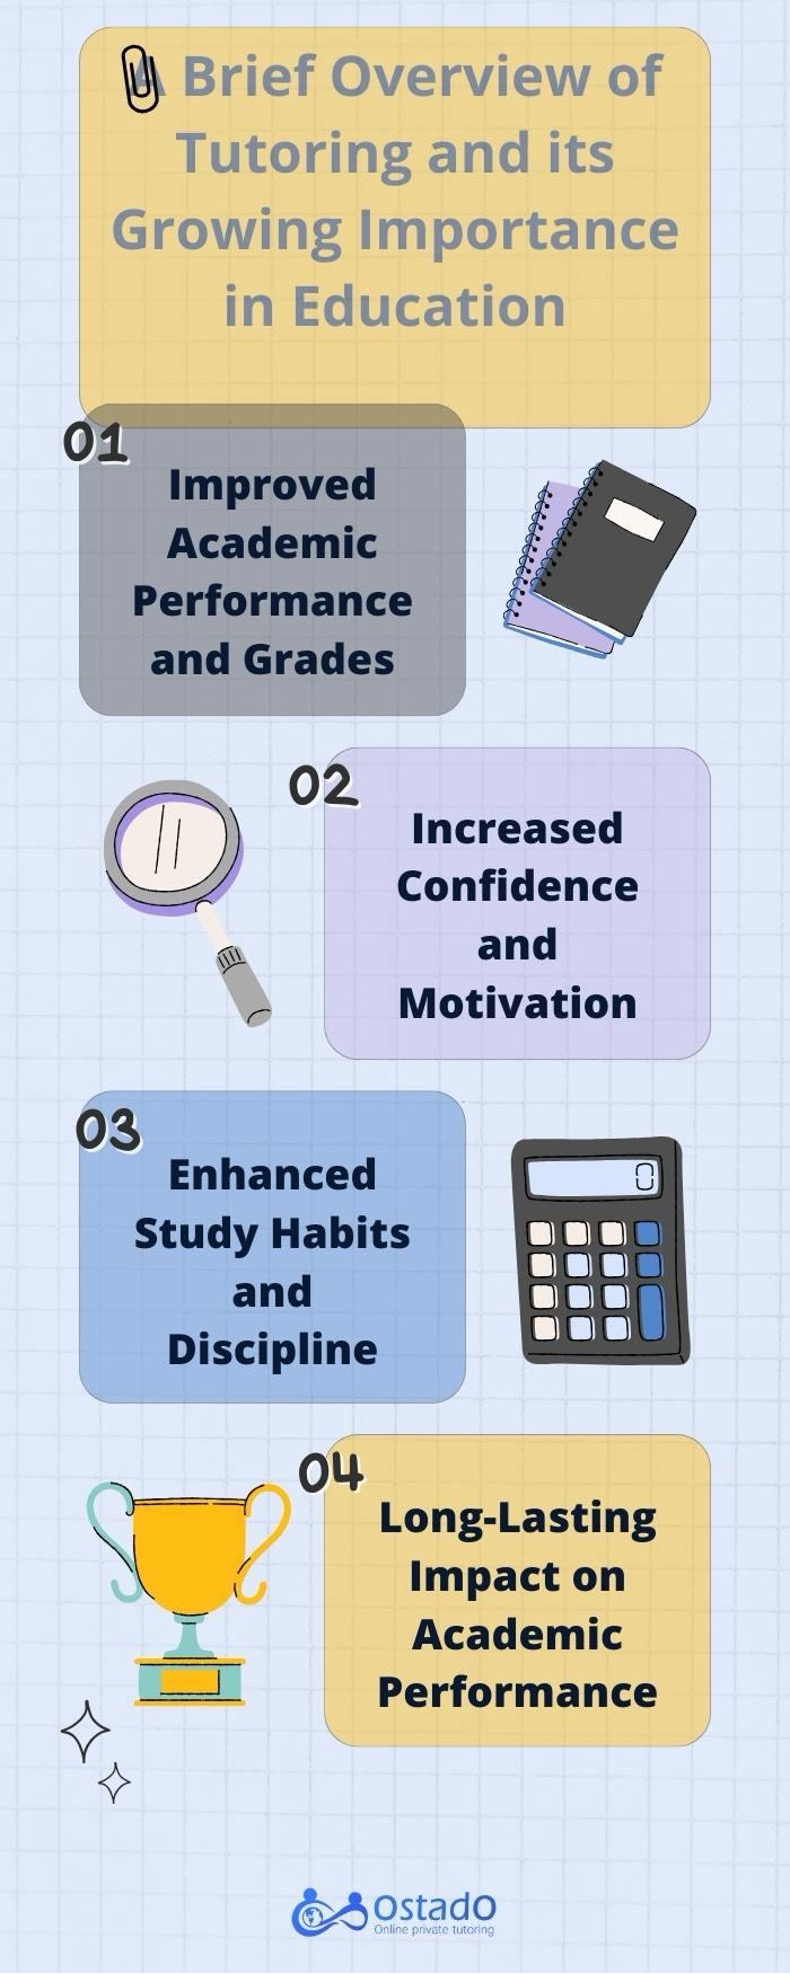 Benefits of tutoring + Benefits of tutoring for students | Ostado.com